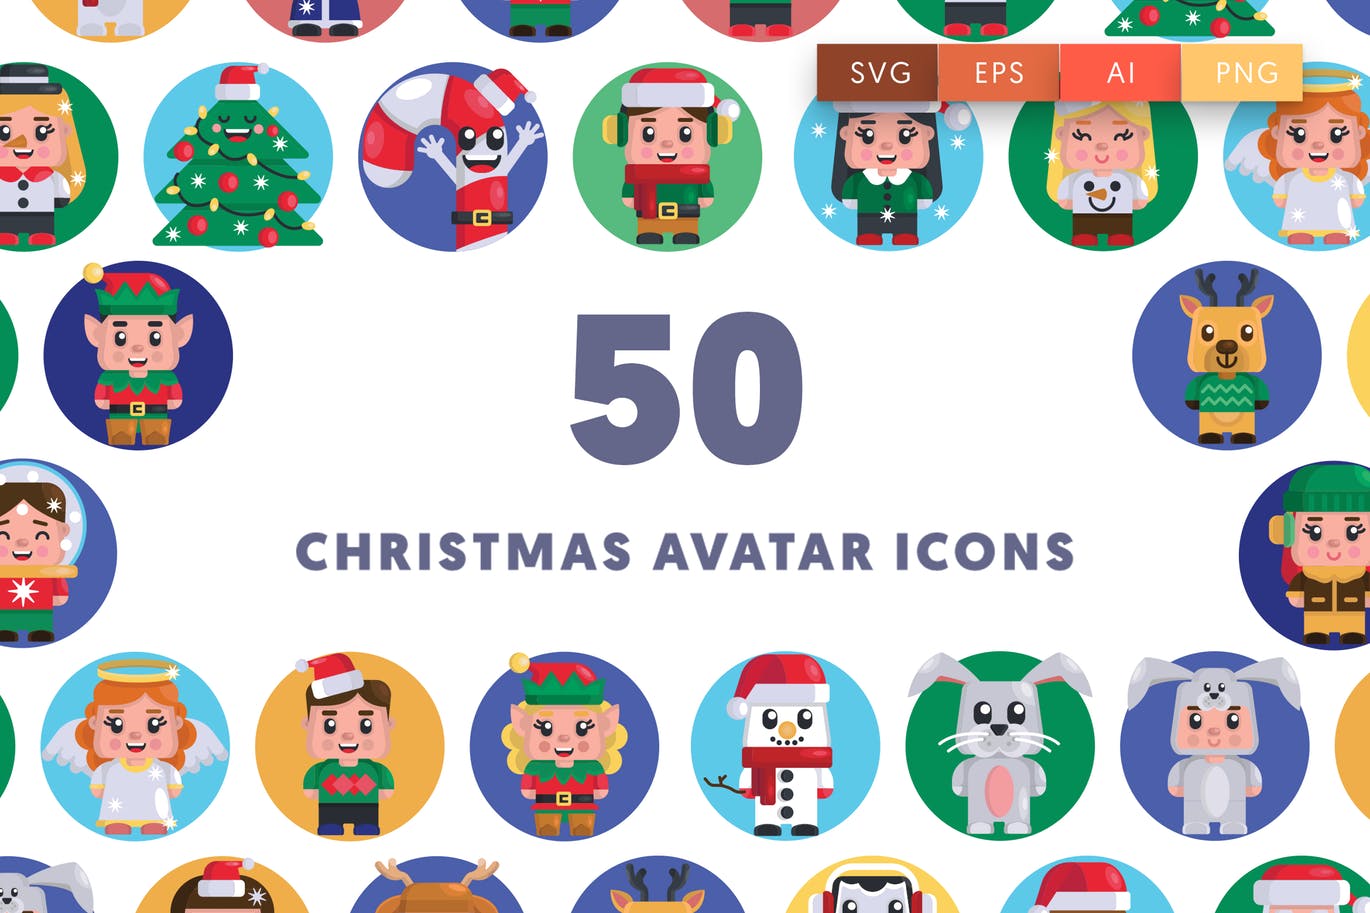 50枚圣诞节人物形象头像图标素材 50 Christmas Avatar Icons插图